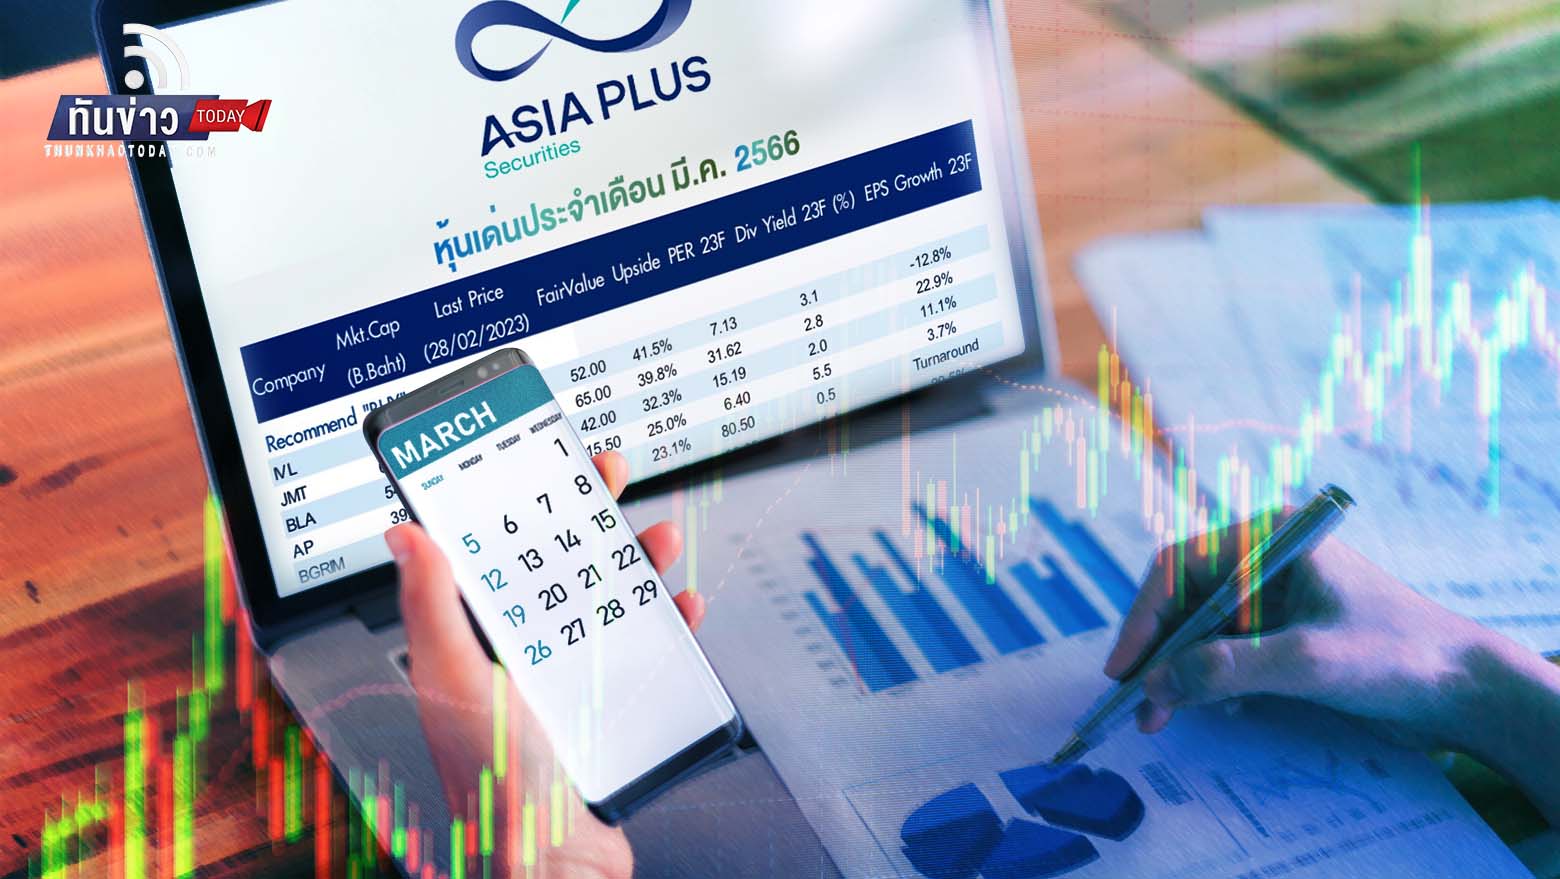 Asia Plus คัด 10 หุ้นเด่นเดือนมี.ค. ตลาดยังคงผันผวนสูง จัดพอร์ตหุ้นไทย 30% หุ้นนอก 30%